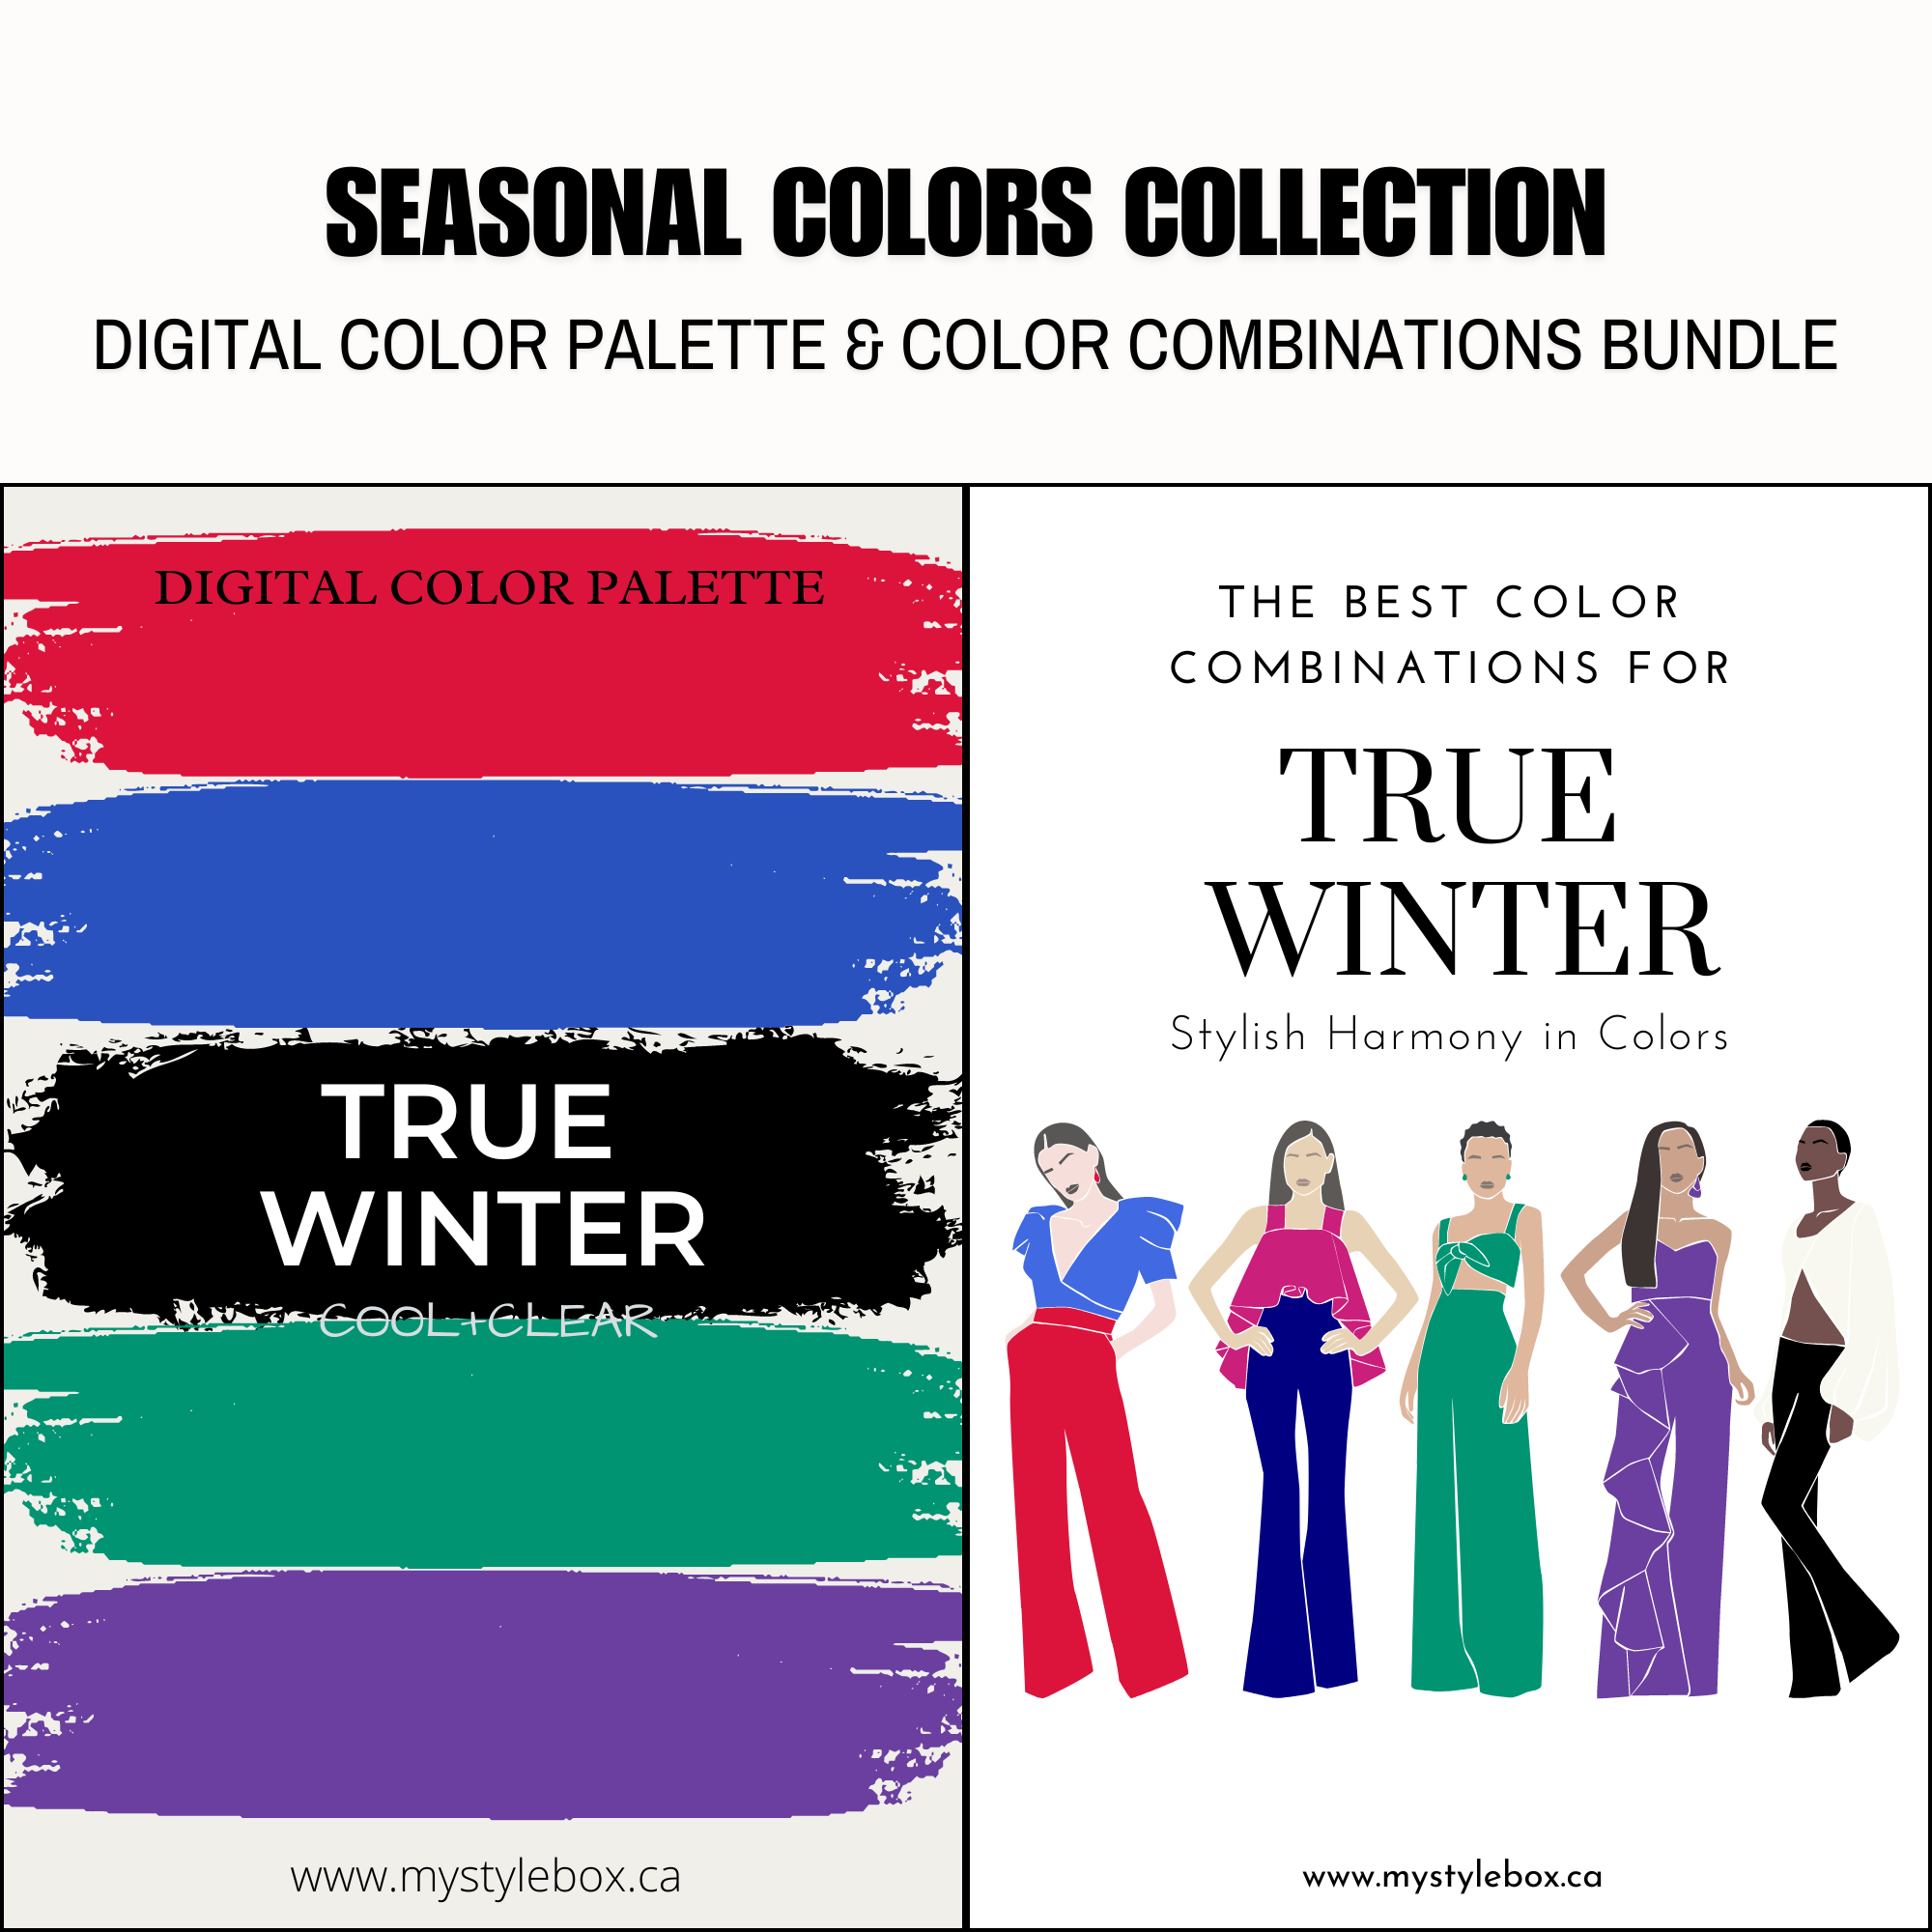 Paquete de paleta de colores digitales y combinaciones de colores True Winter Season